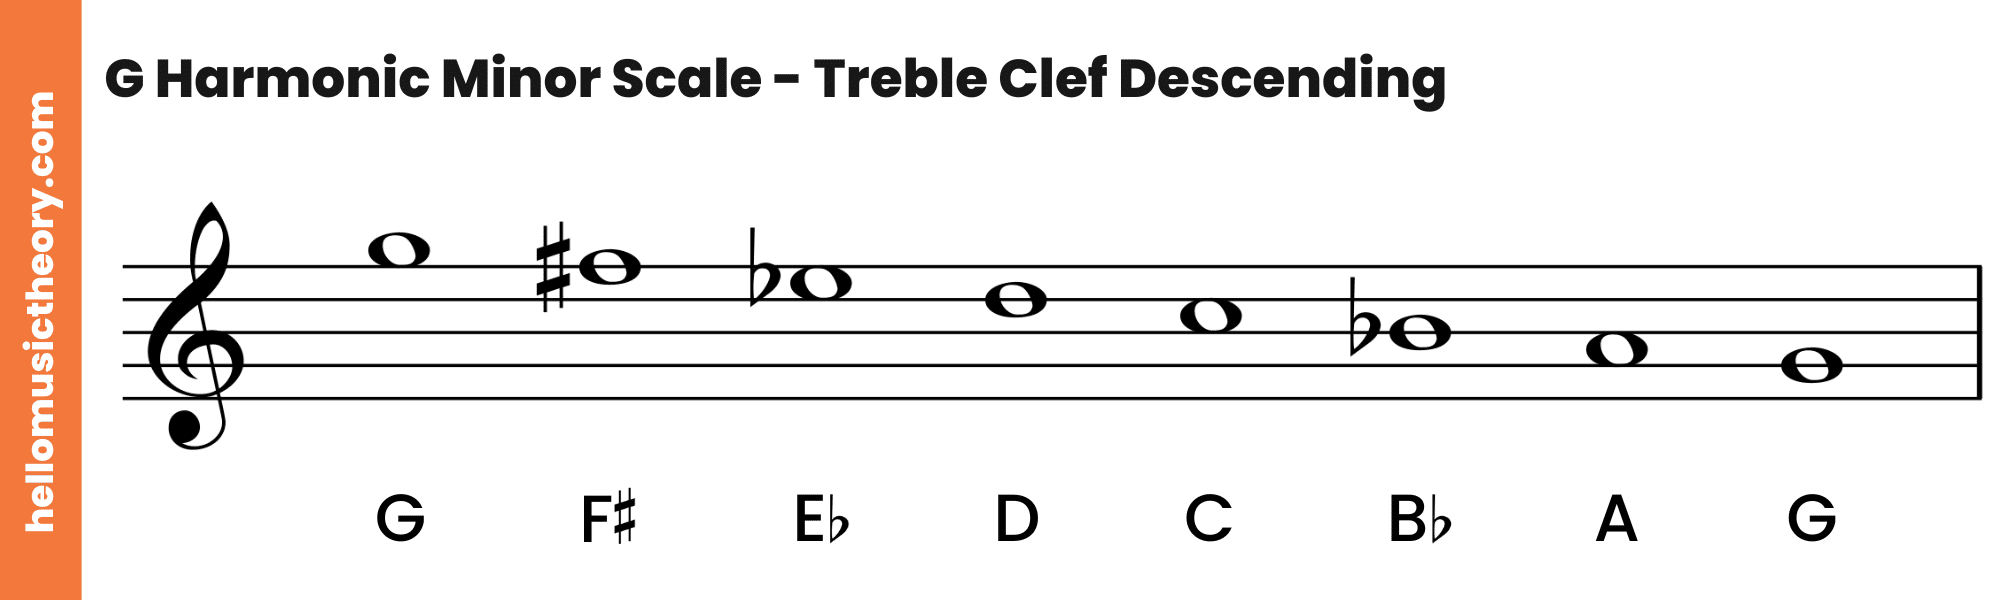 G Harmonic Minor Scale Treble Clef Descending